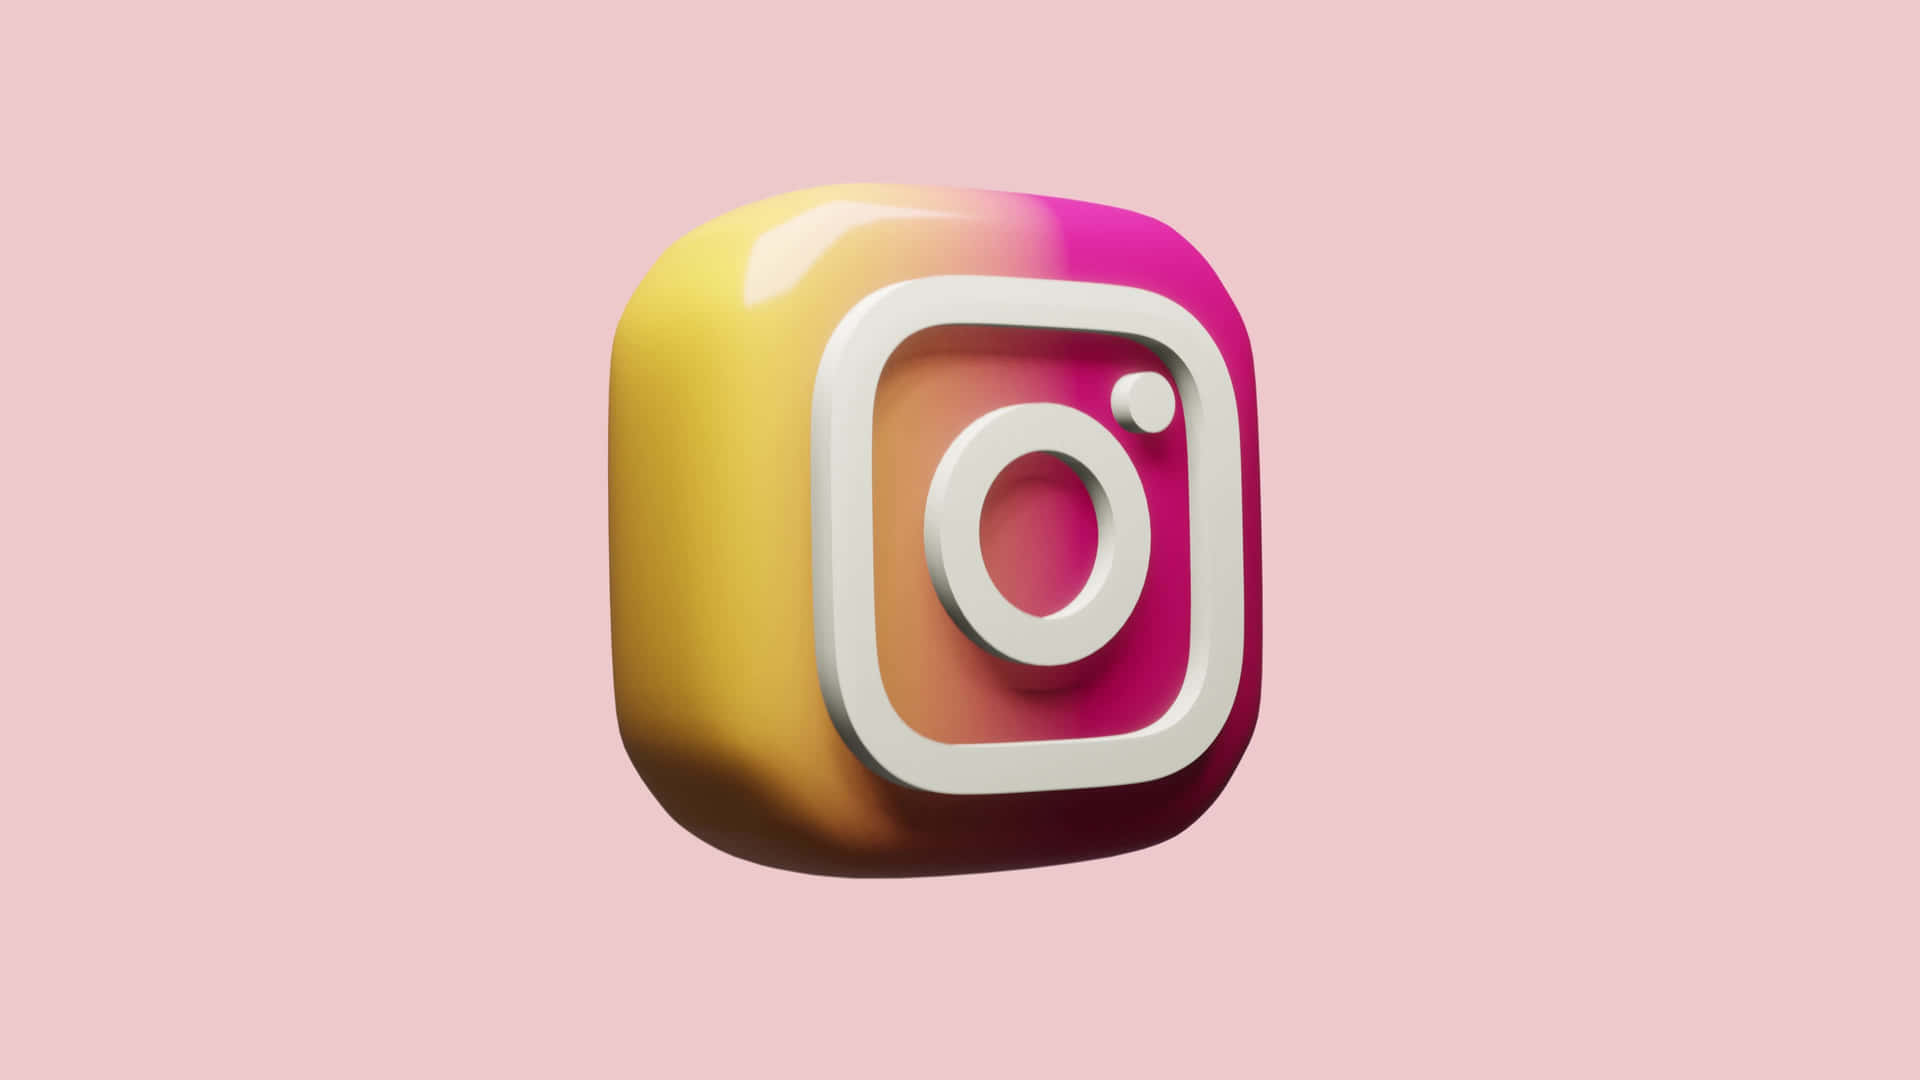 Landschaftlicherinstagram 4k Hintergrund Für Soziale Medien Apps